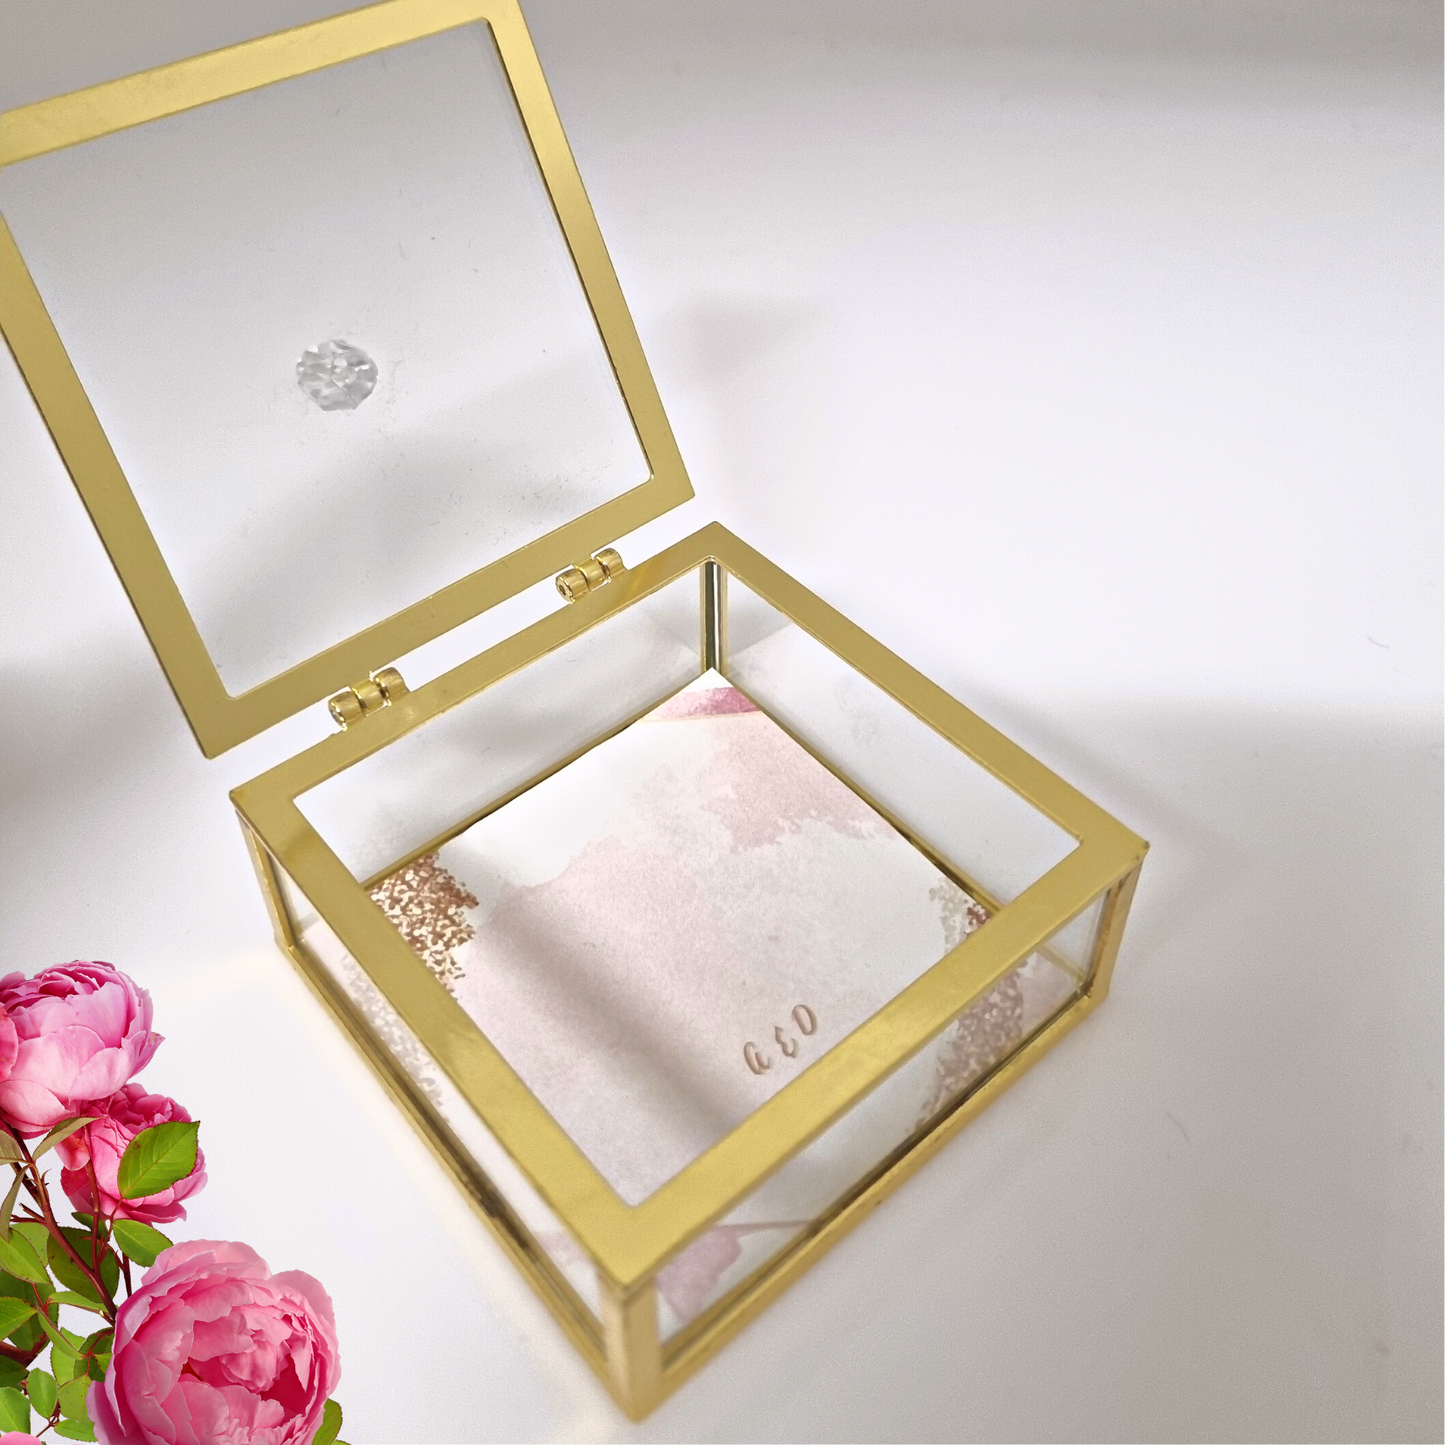 Μπομπονιέρα premium κουτί γυάλινο με χρυσό μεταλλικό περίγραμμα